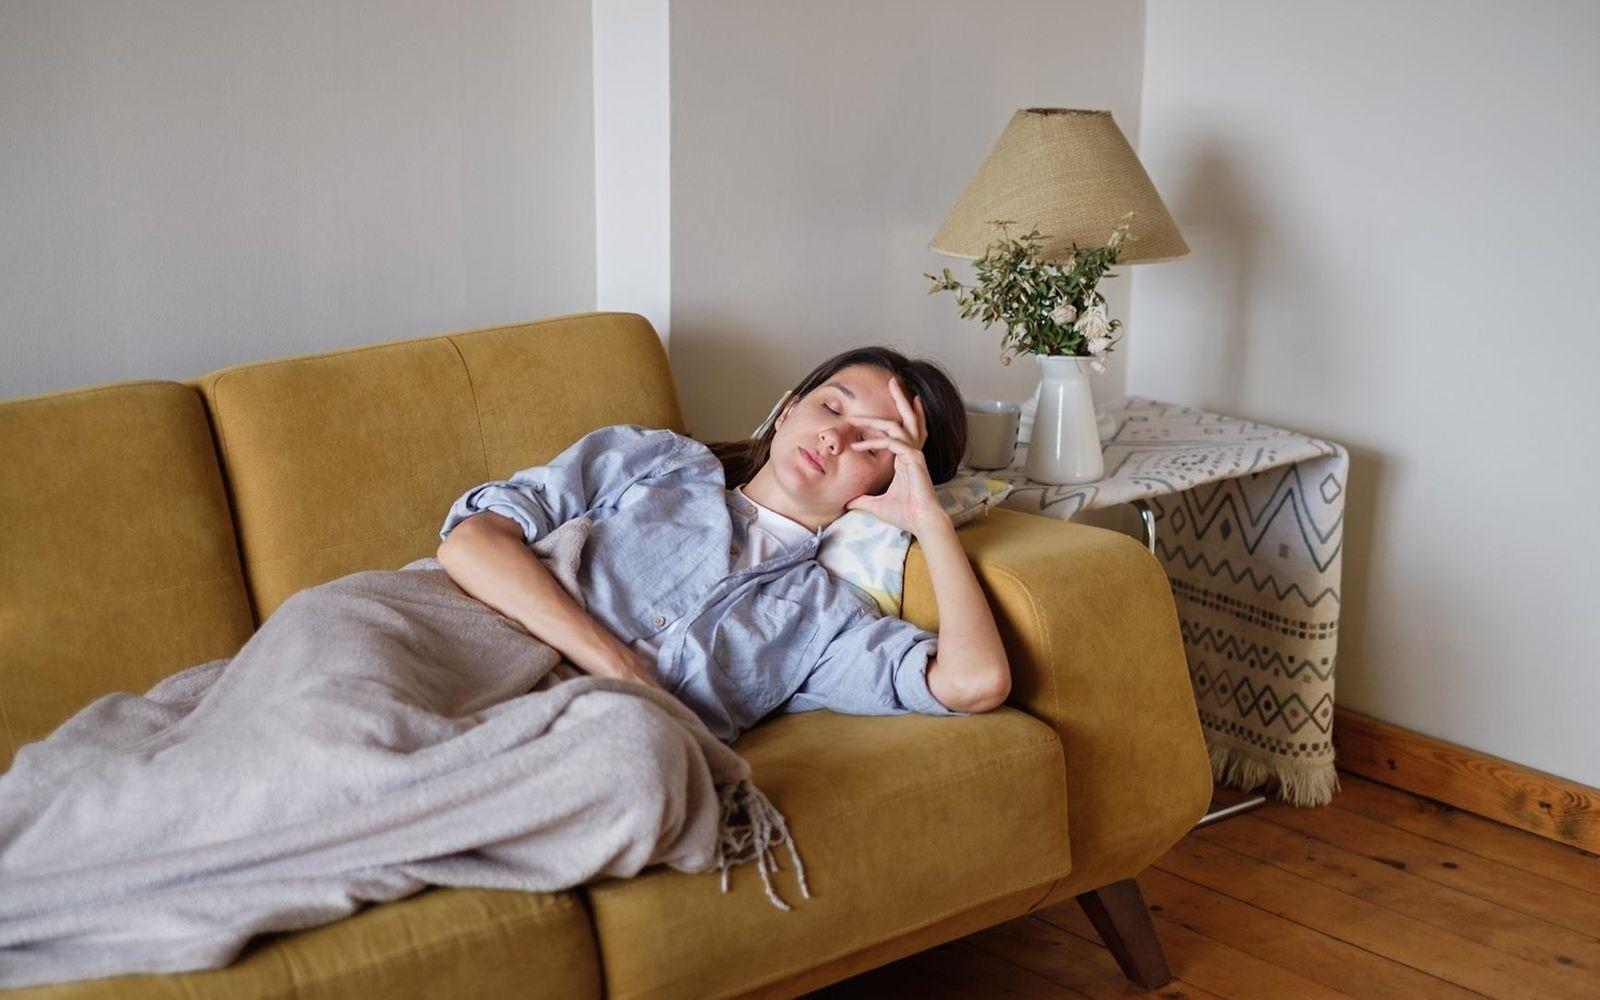 Symbolbild: Kranke Frau liegt auf dem Sofa und fasst sich an den Kopf